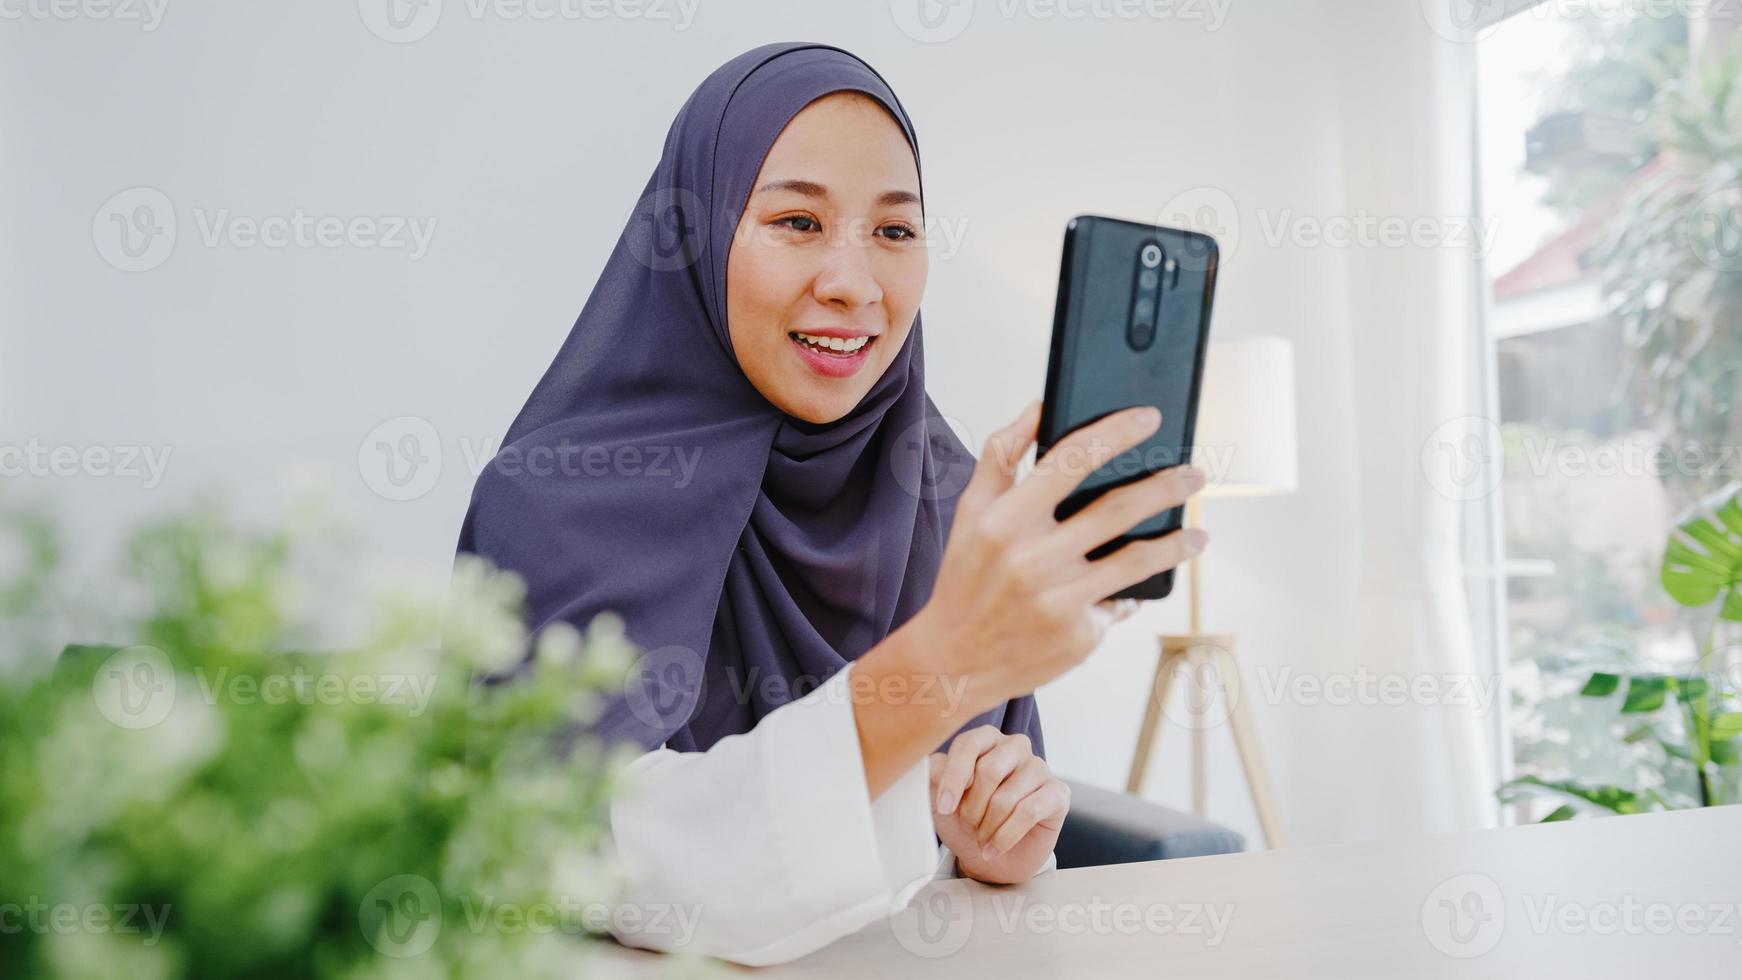 giovane donna d'affari musulmana asiatica che utilizza lo smartphone parla con un amico tramite videochat brainstorming riunione online mentre lavora a distanza da casa in soggiorno. distanziamento sociale, quarantena per il virus corona. foto